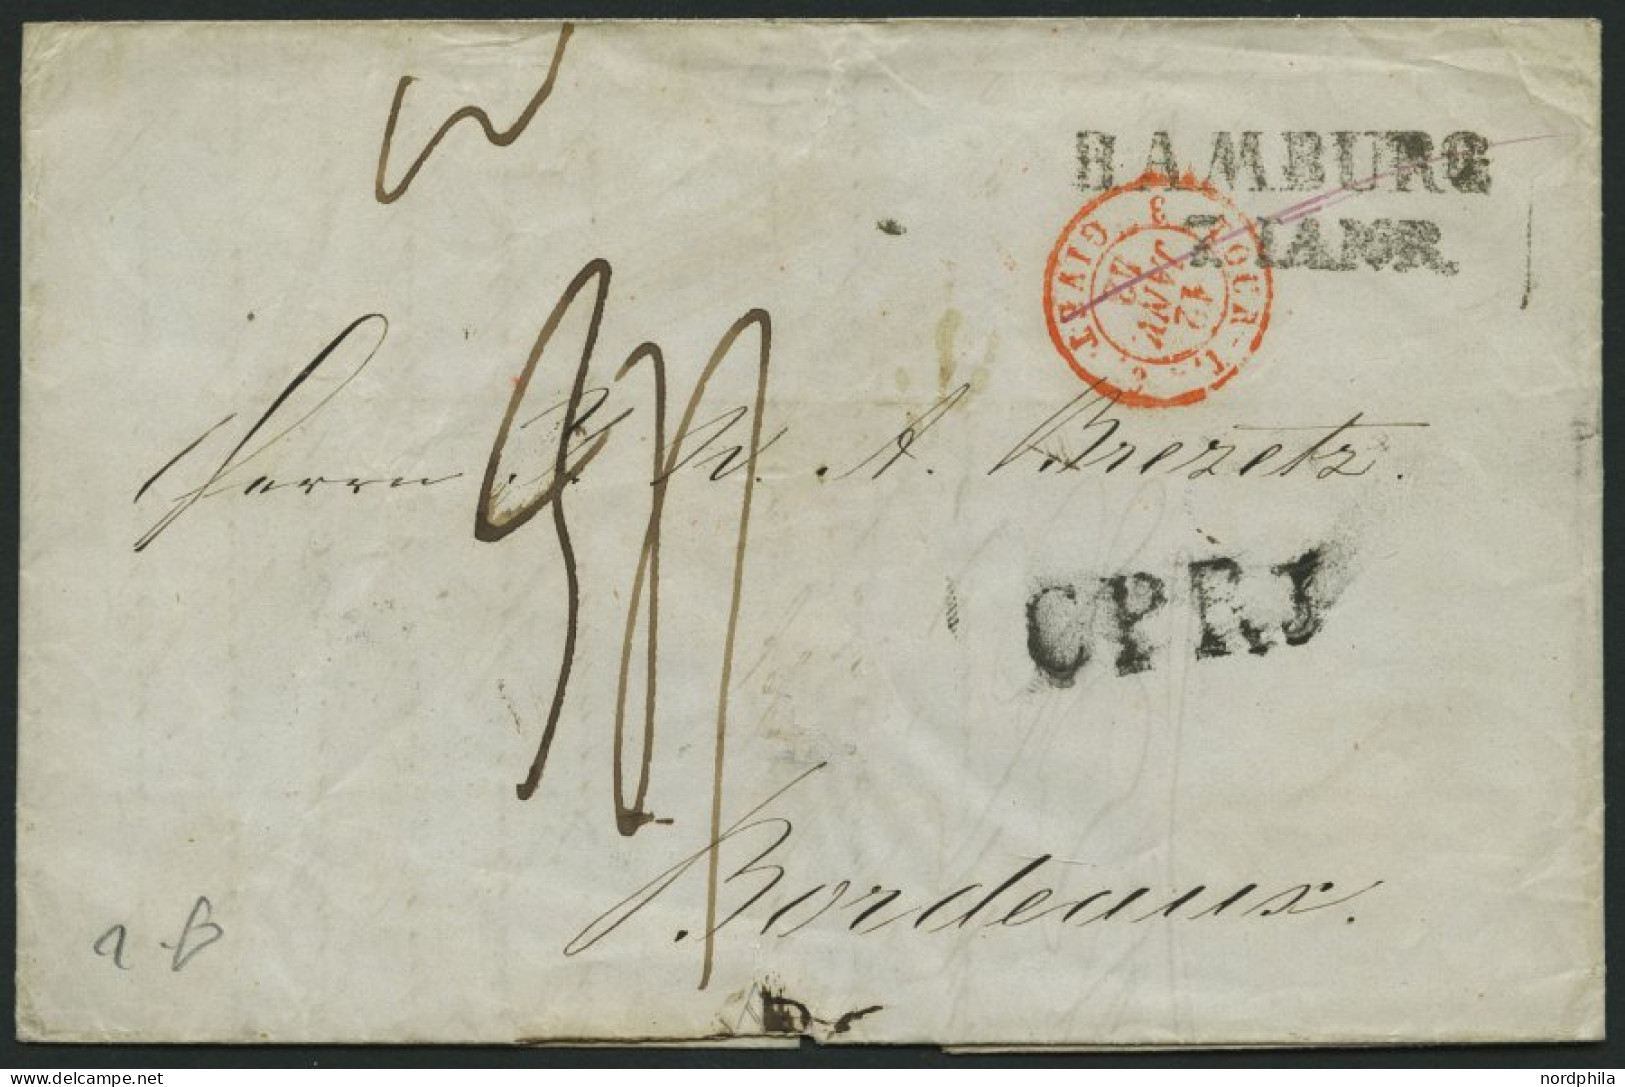 HAMBURG - GRENZÜBERGANGSSTEMPEL 1843, C P R 3, L1 Auf Brief Von Hamburg (L2) Nach Bordeaux, Pracht - Precursores